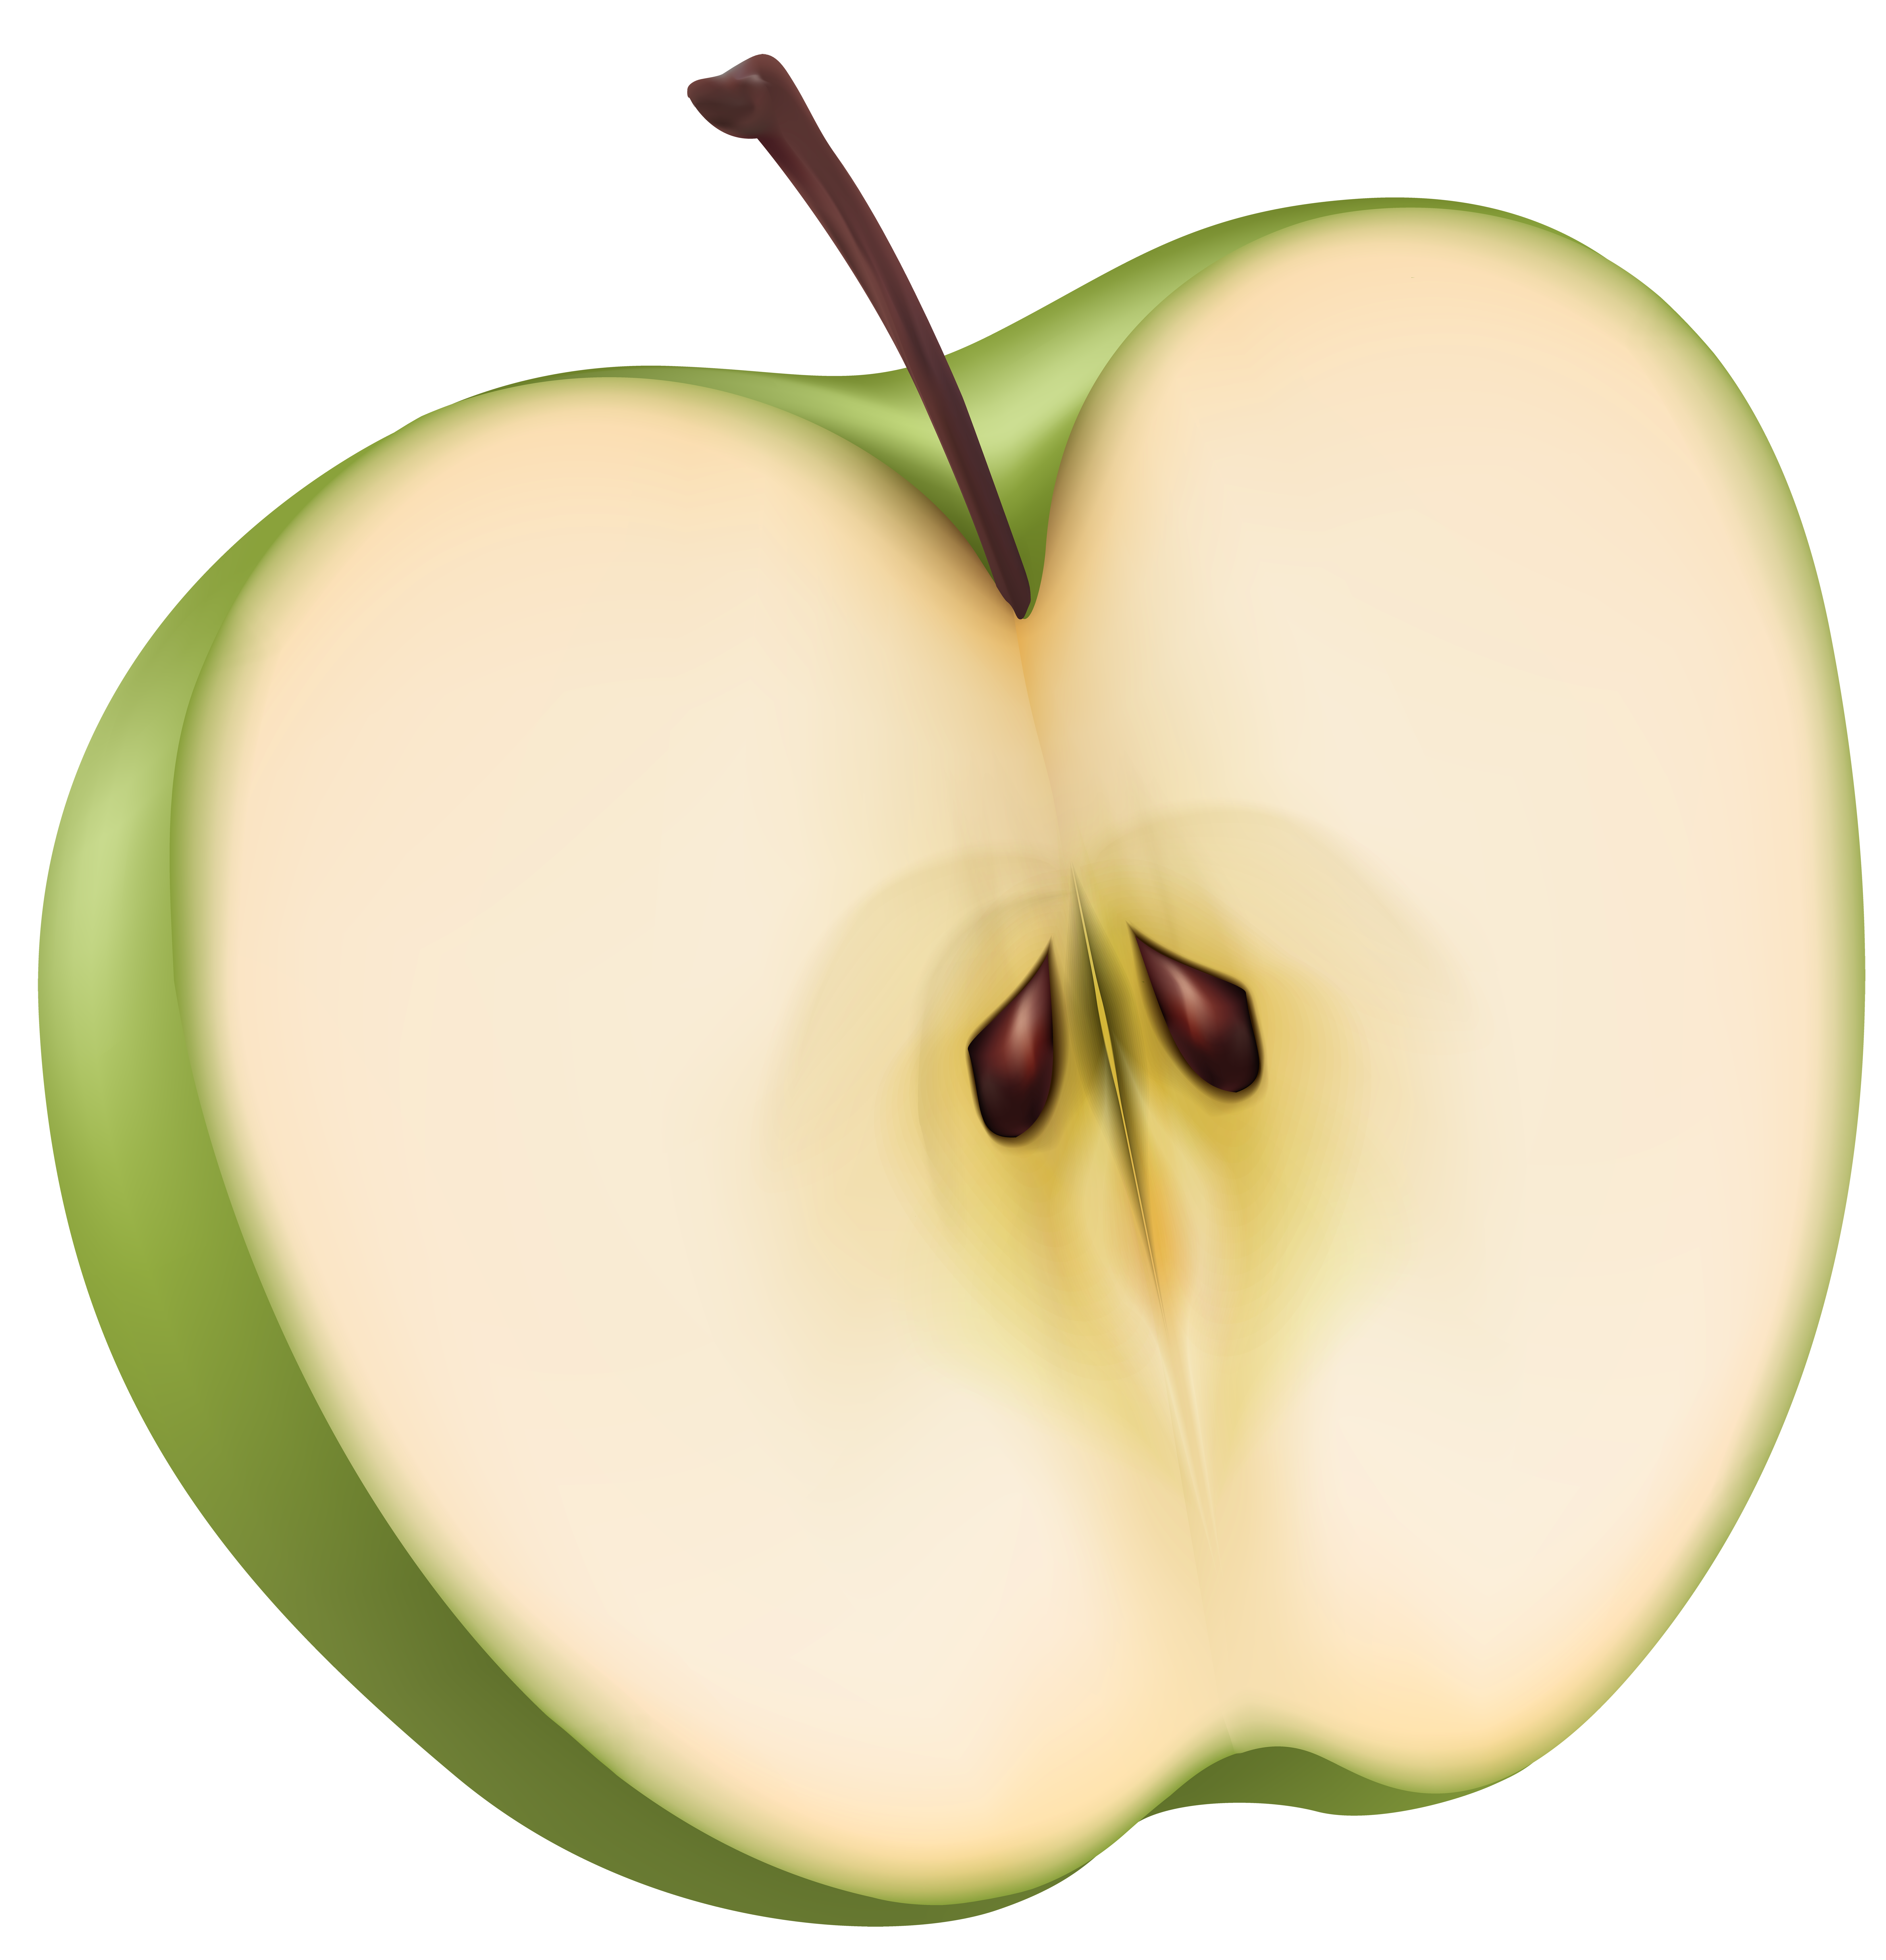 Две трети яблока. Половинка яблока. Яблоко в разрезе. Разрезанное яблоко. Yabloko v razreze.